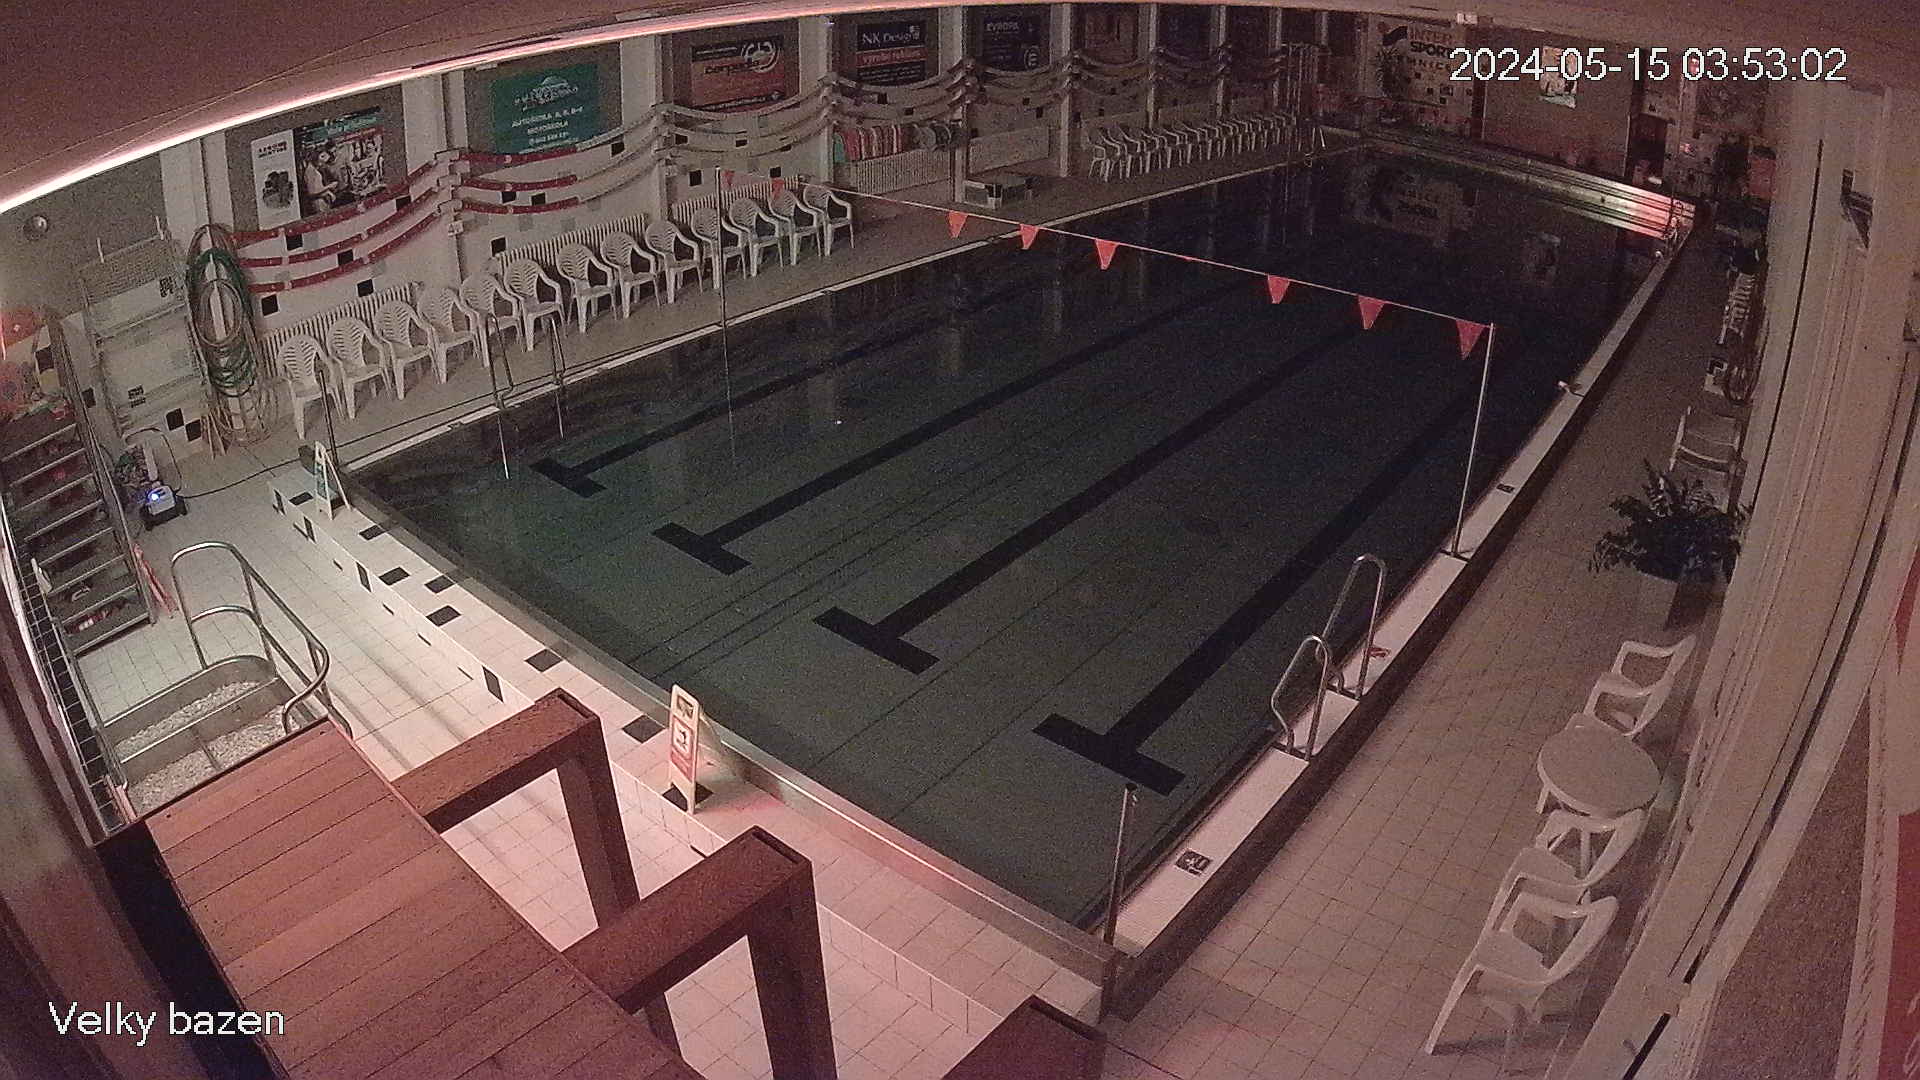 Plavecký bazén, Jilemnice